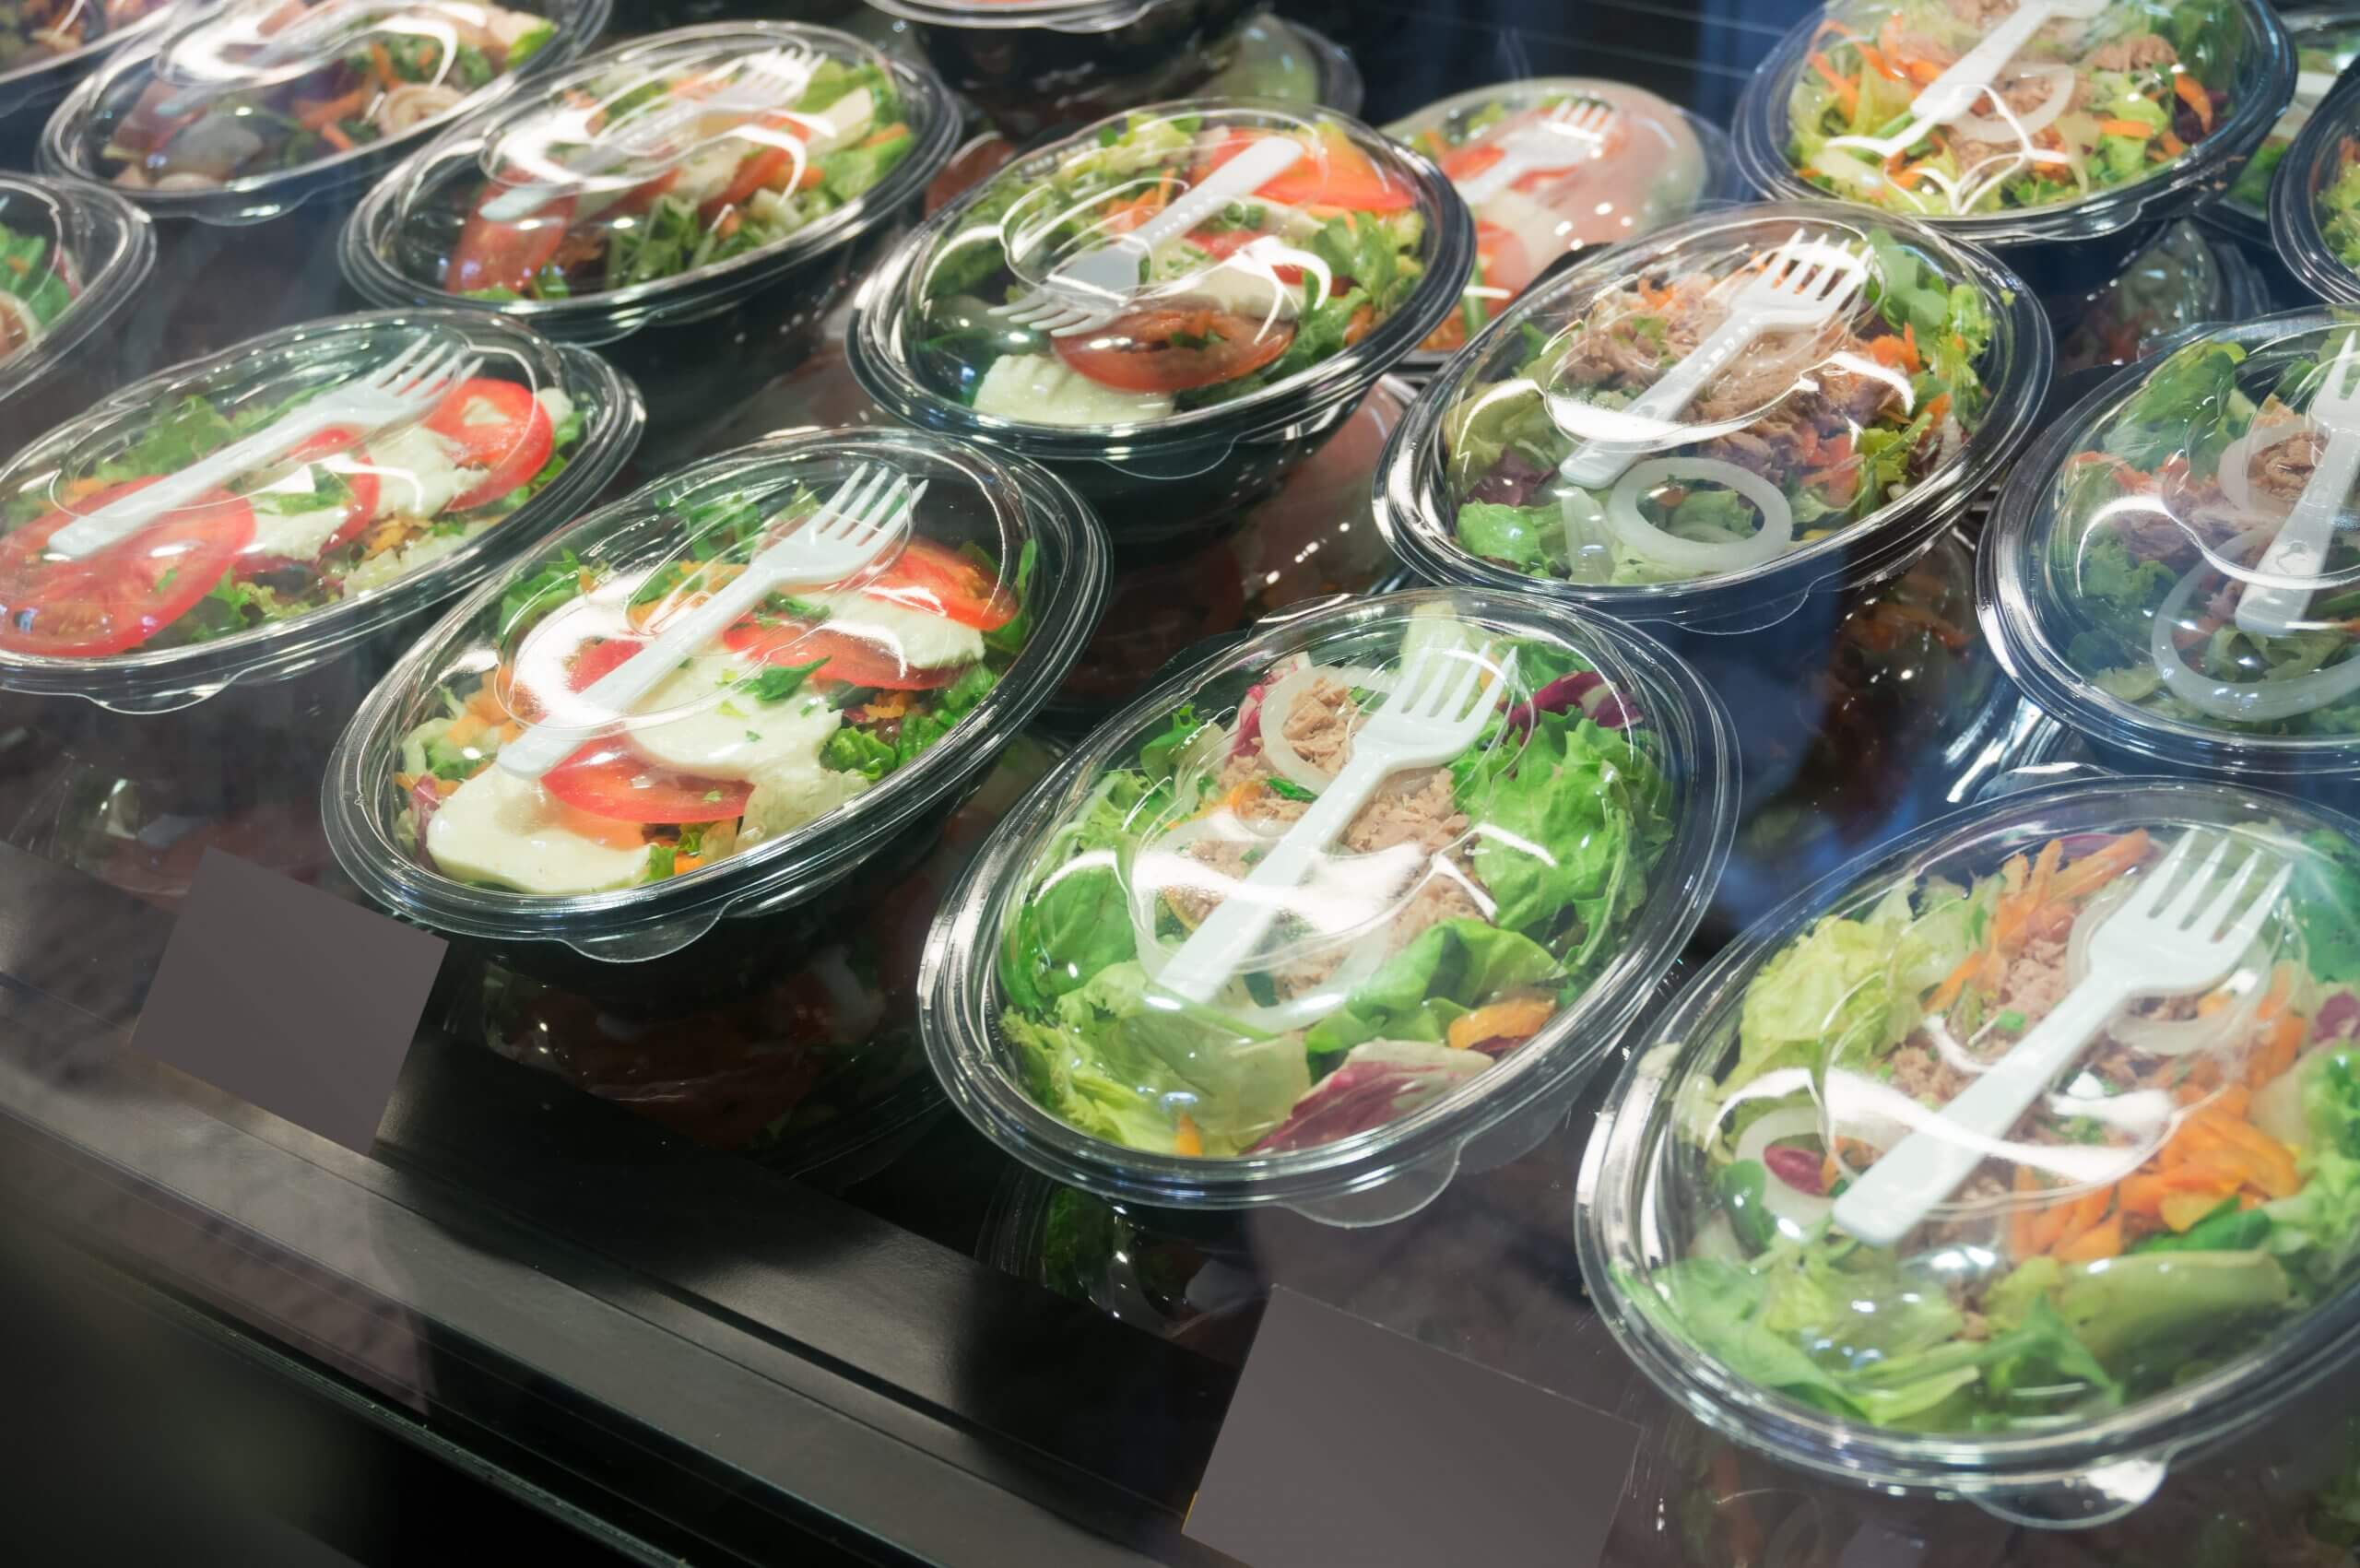 Salad và rau củ đóng hộp không nên rửa lại